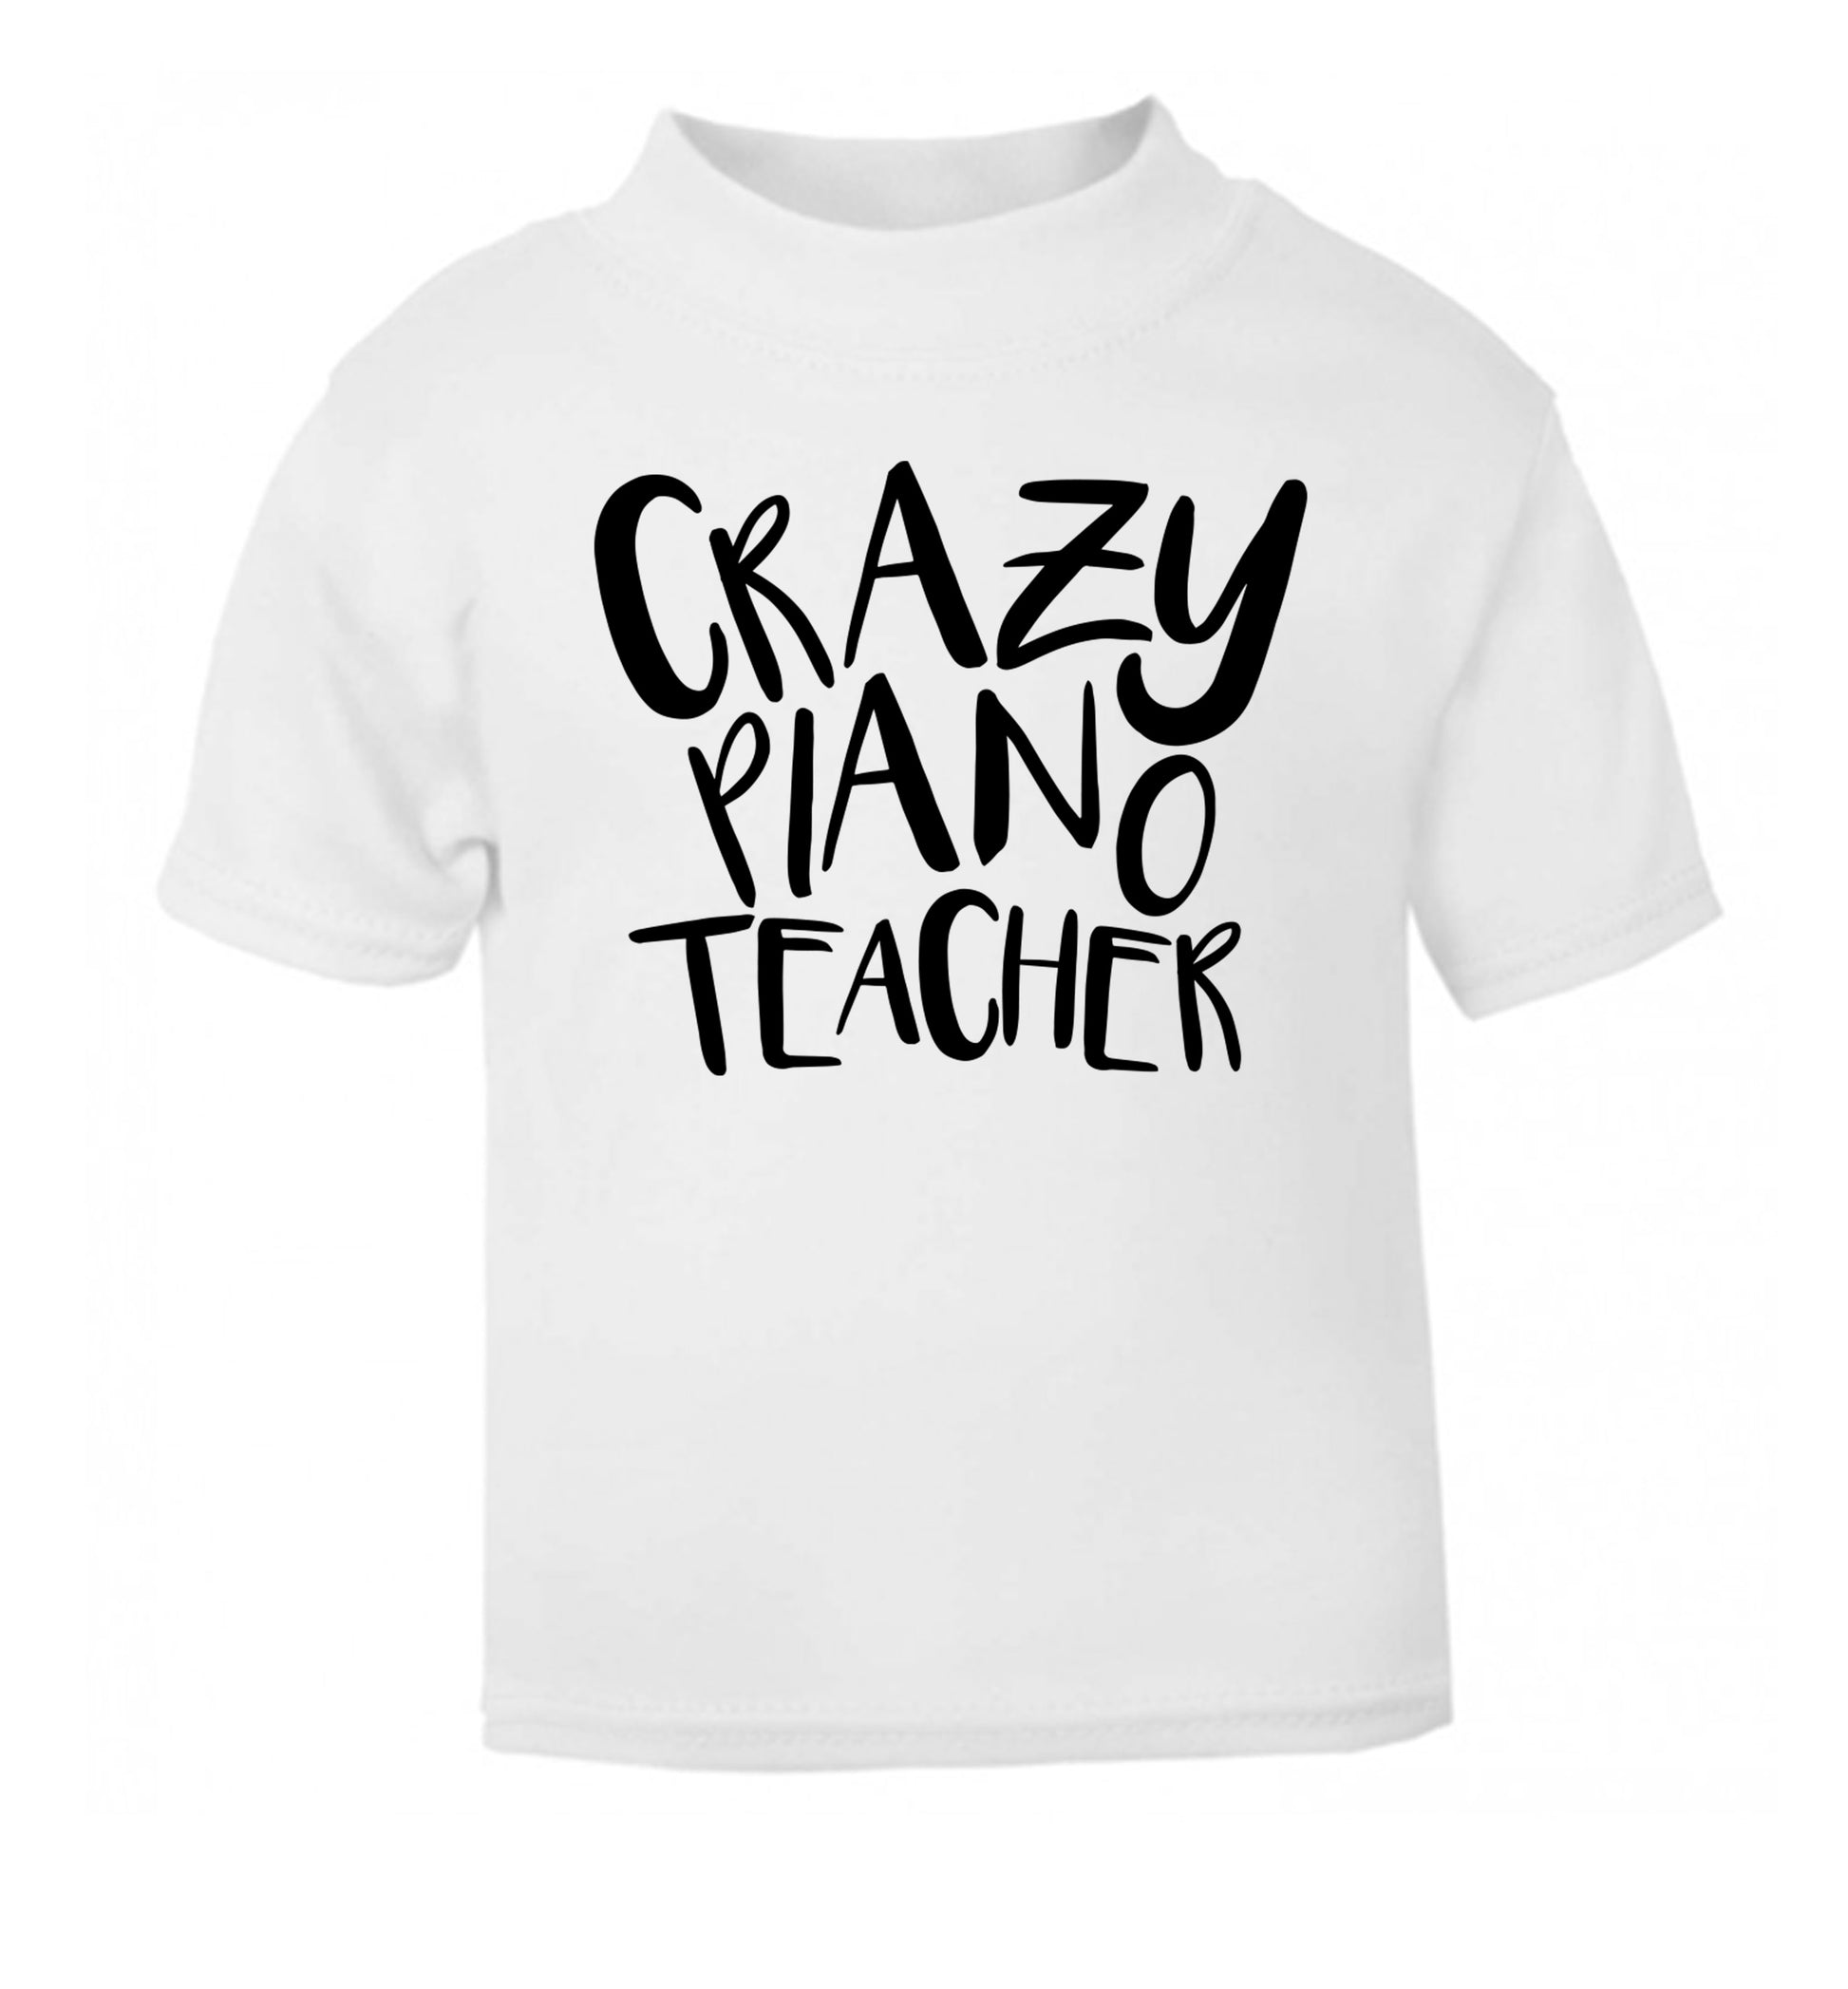 Crazy piano teacher white Baby Toddler Tshirt 2 Years